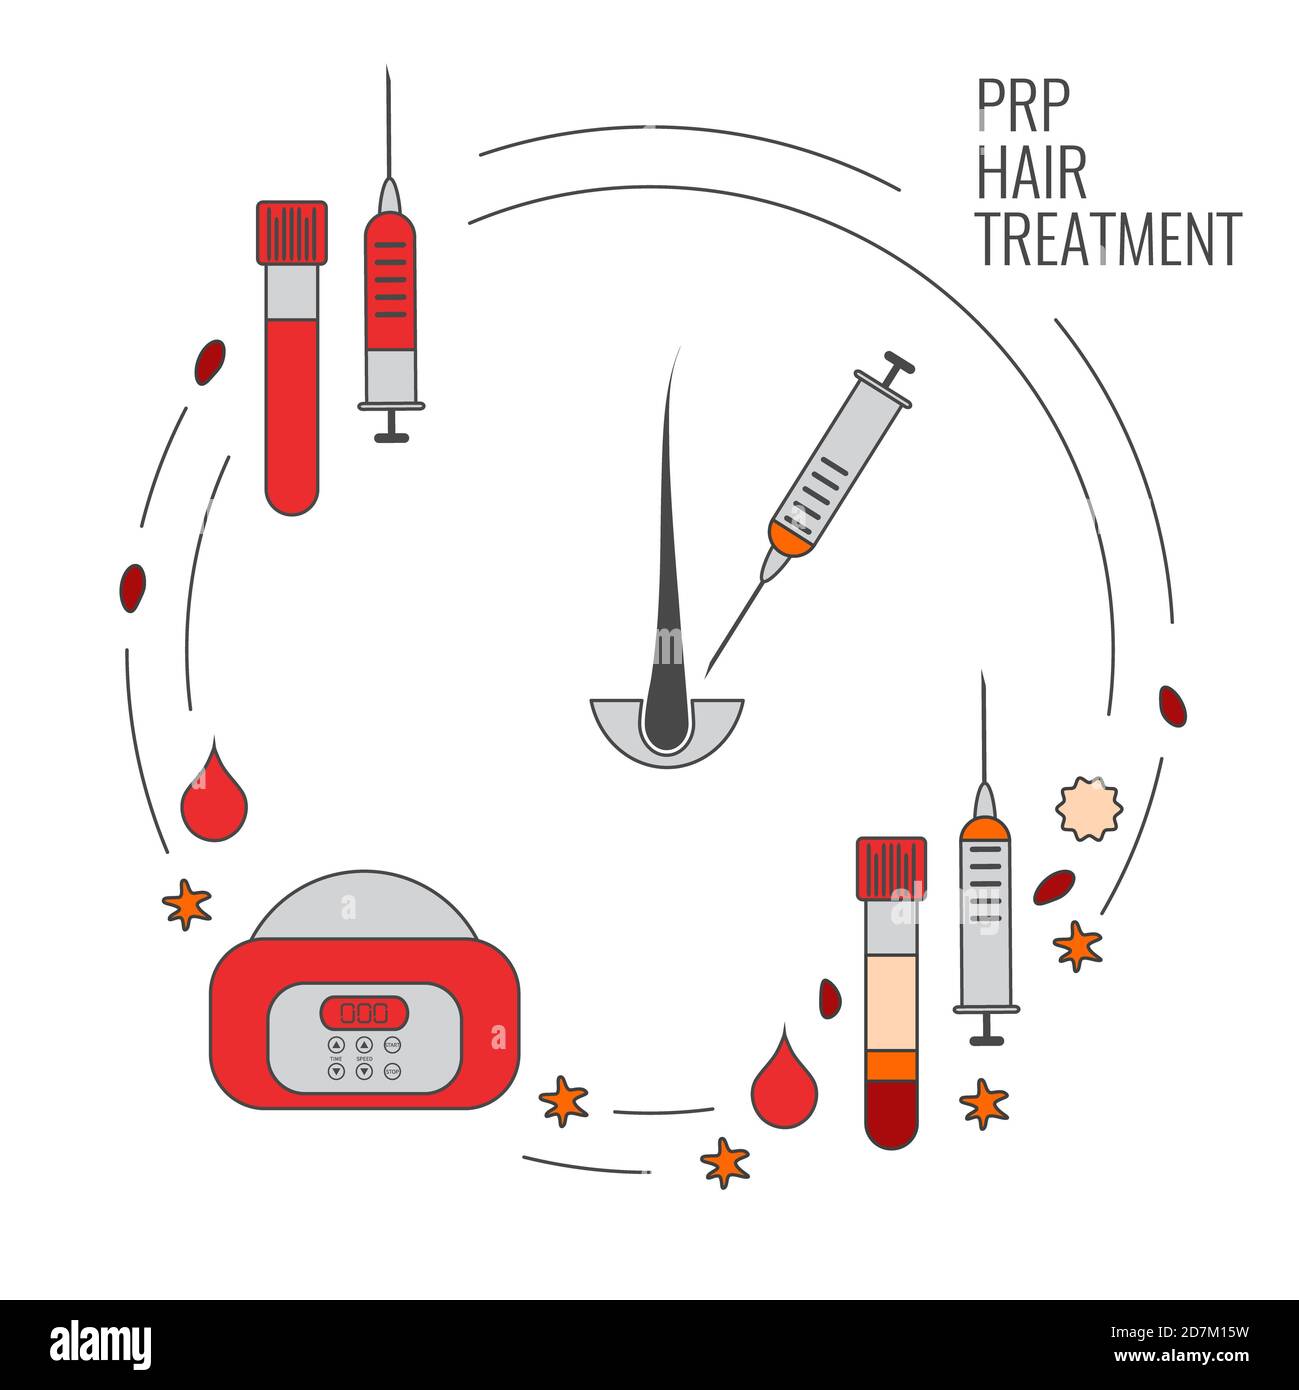 Traitement au plasma riche en plaquettes (PRP), illustration. Banque D'Images